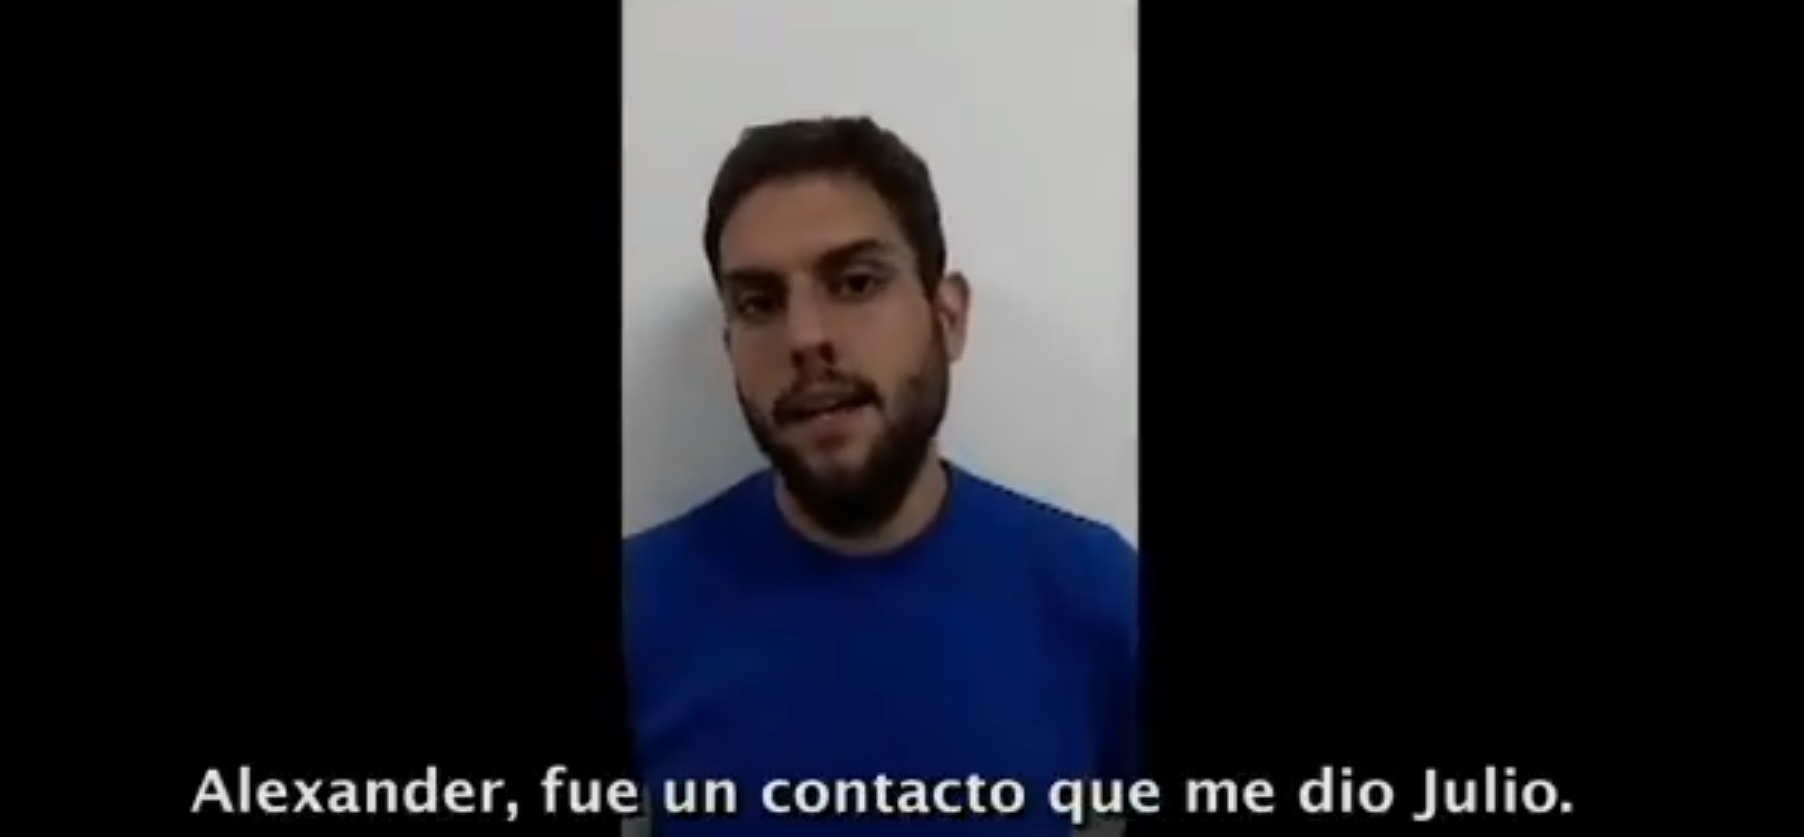 Este es el segundo video en el que el exdiputado ofrece detalles de la operación que buscó asesinar al presidente Nicolás Maduro.